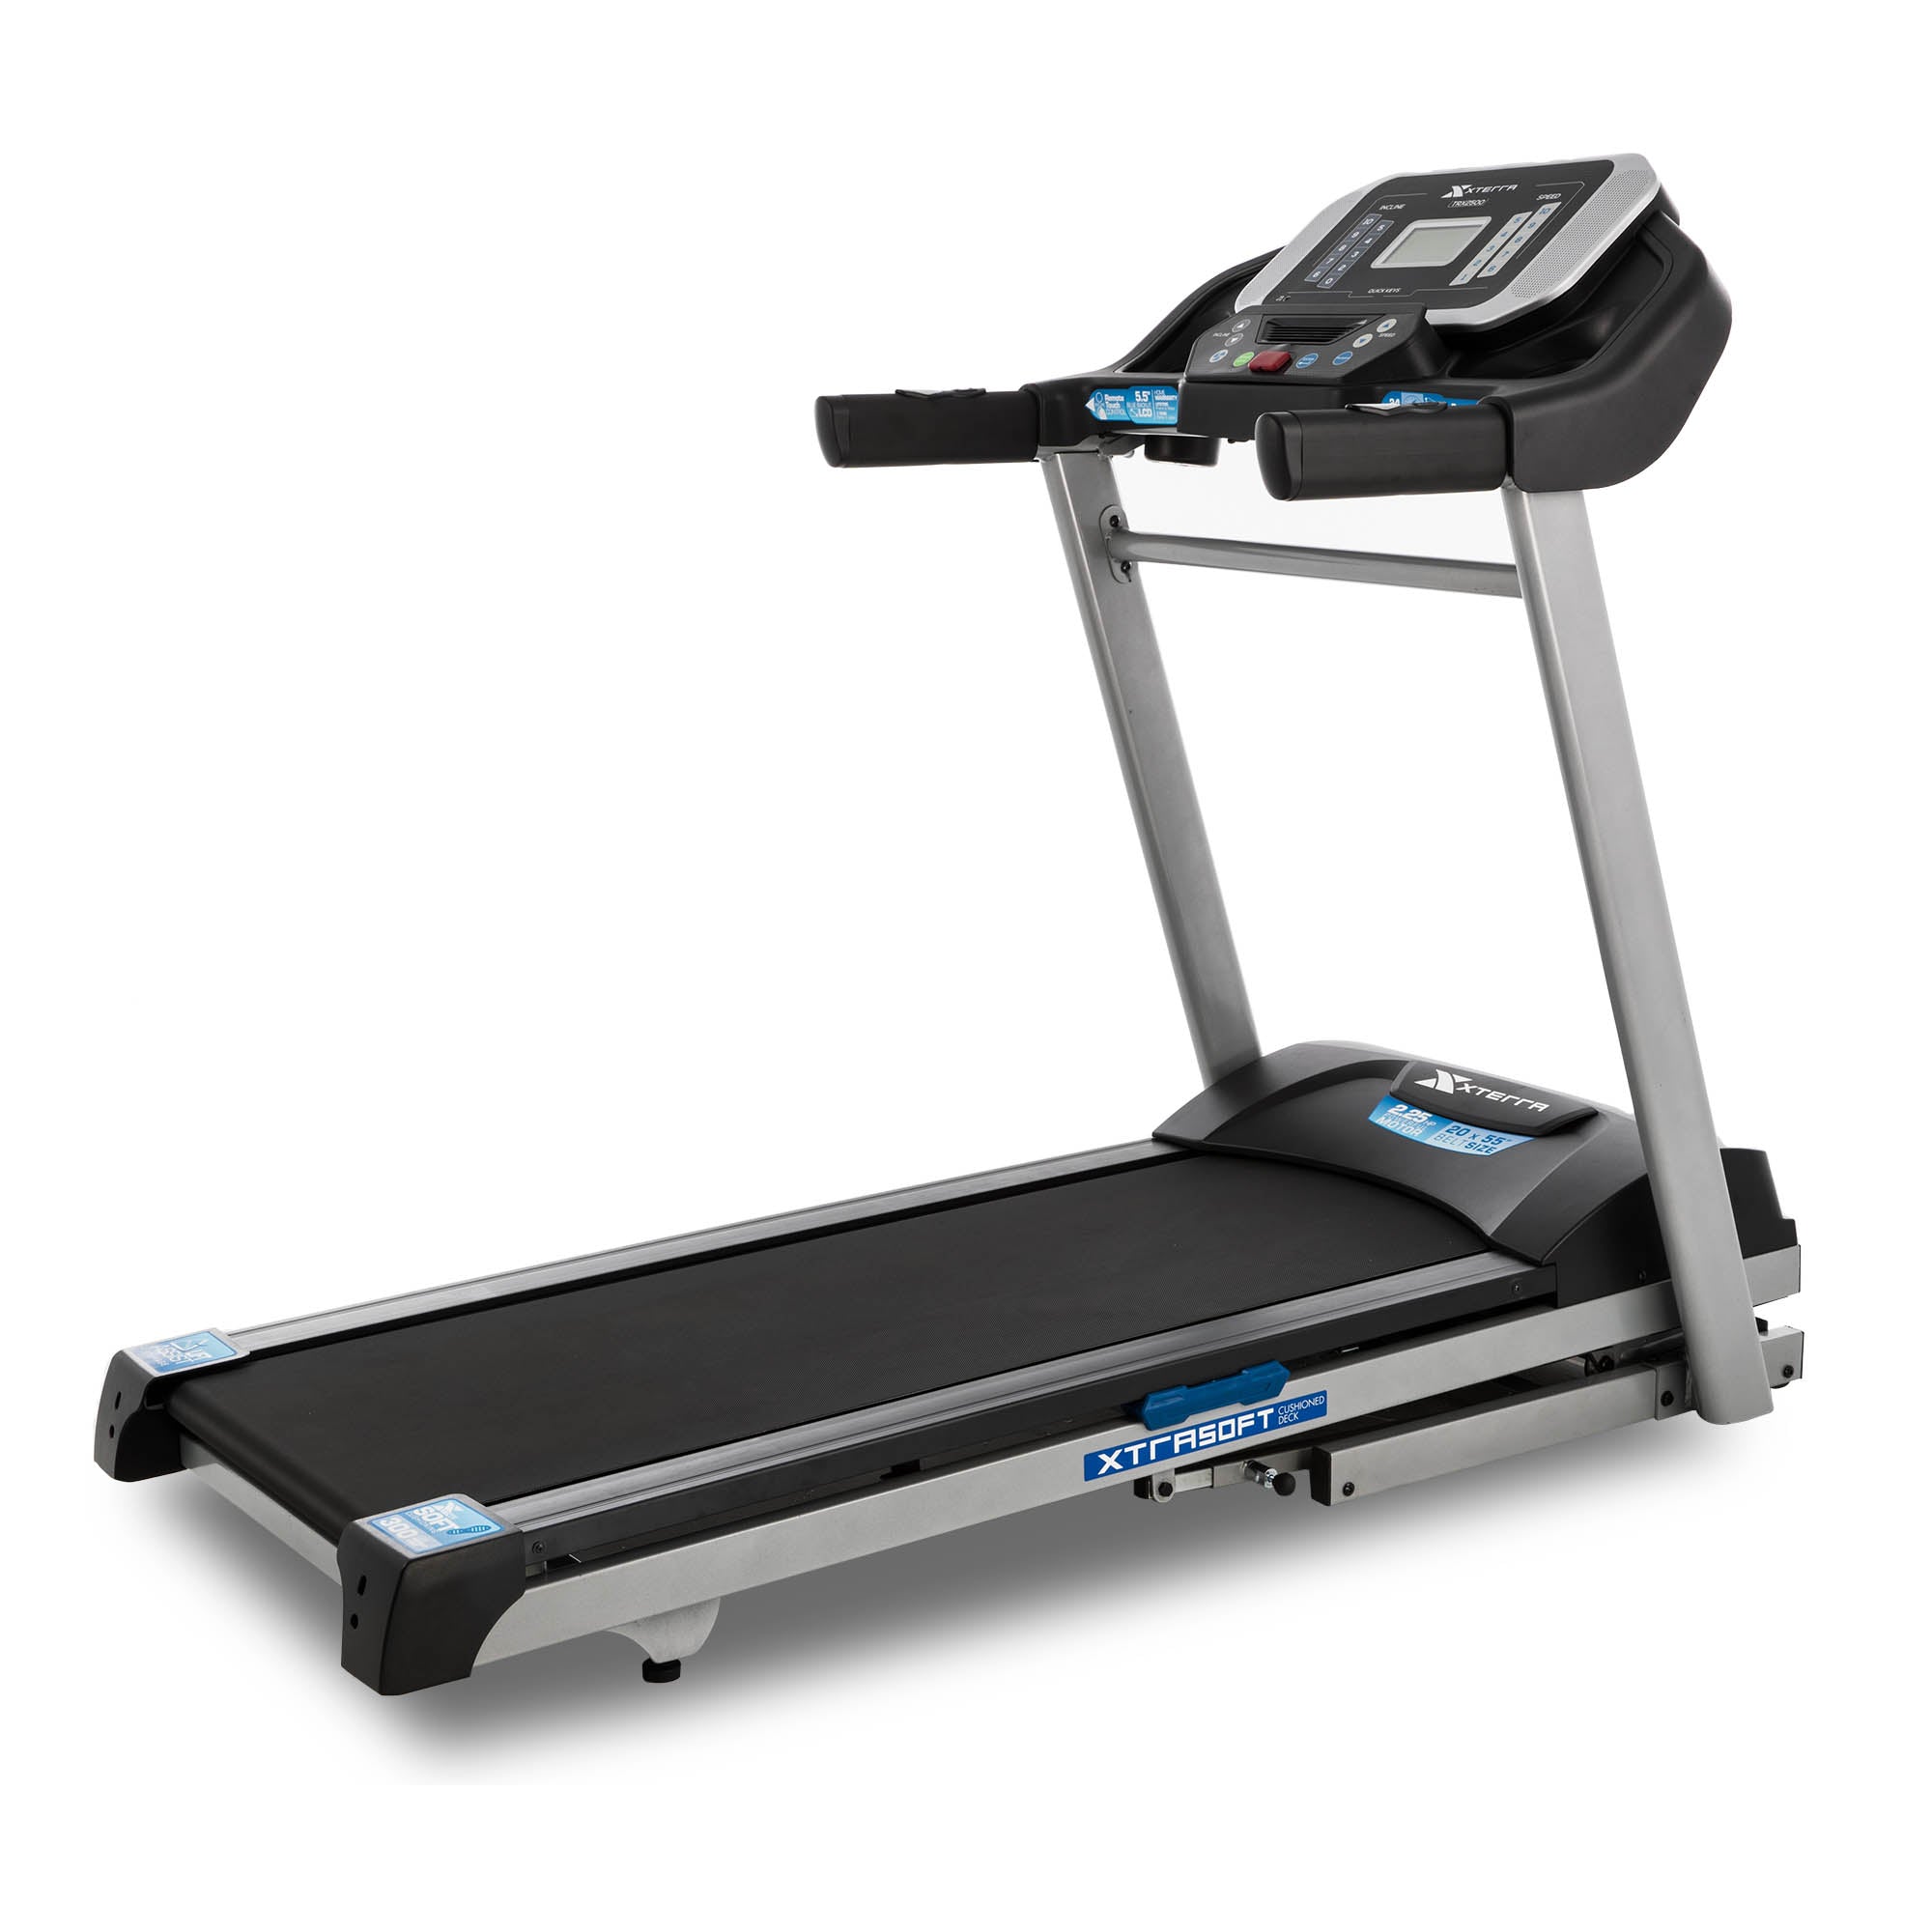 Xterra Fitness TRX2500 Folding Treadmill